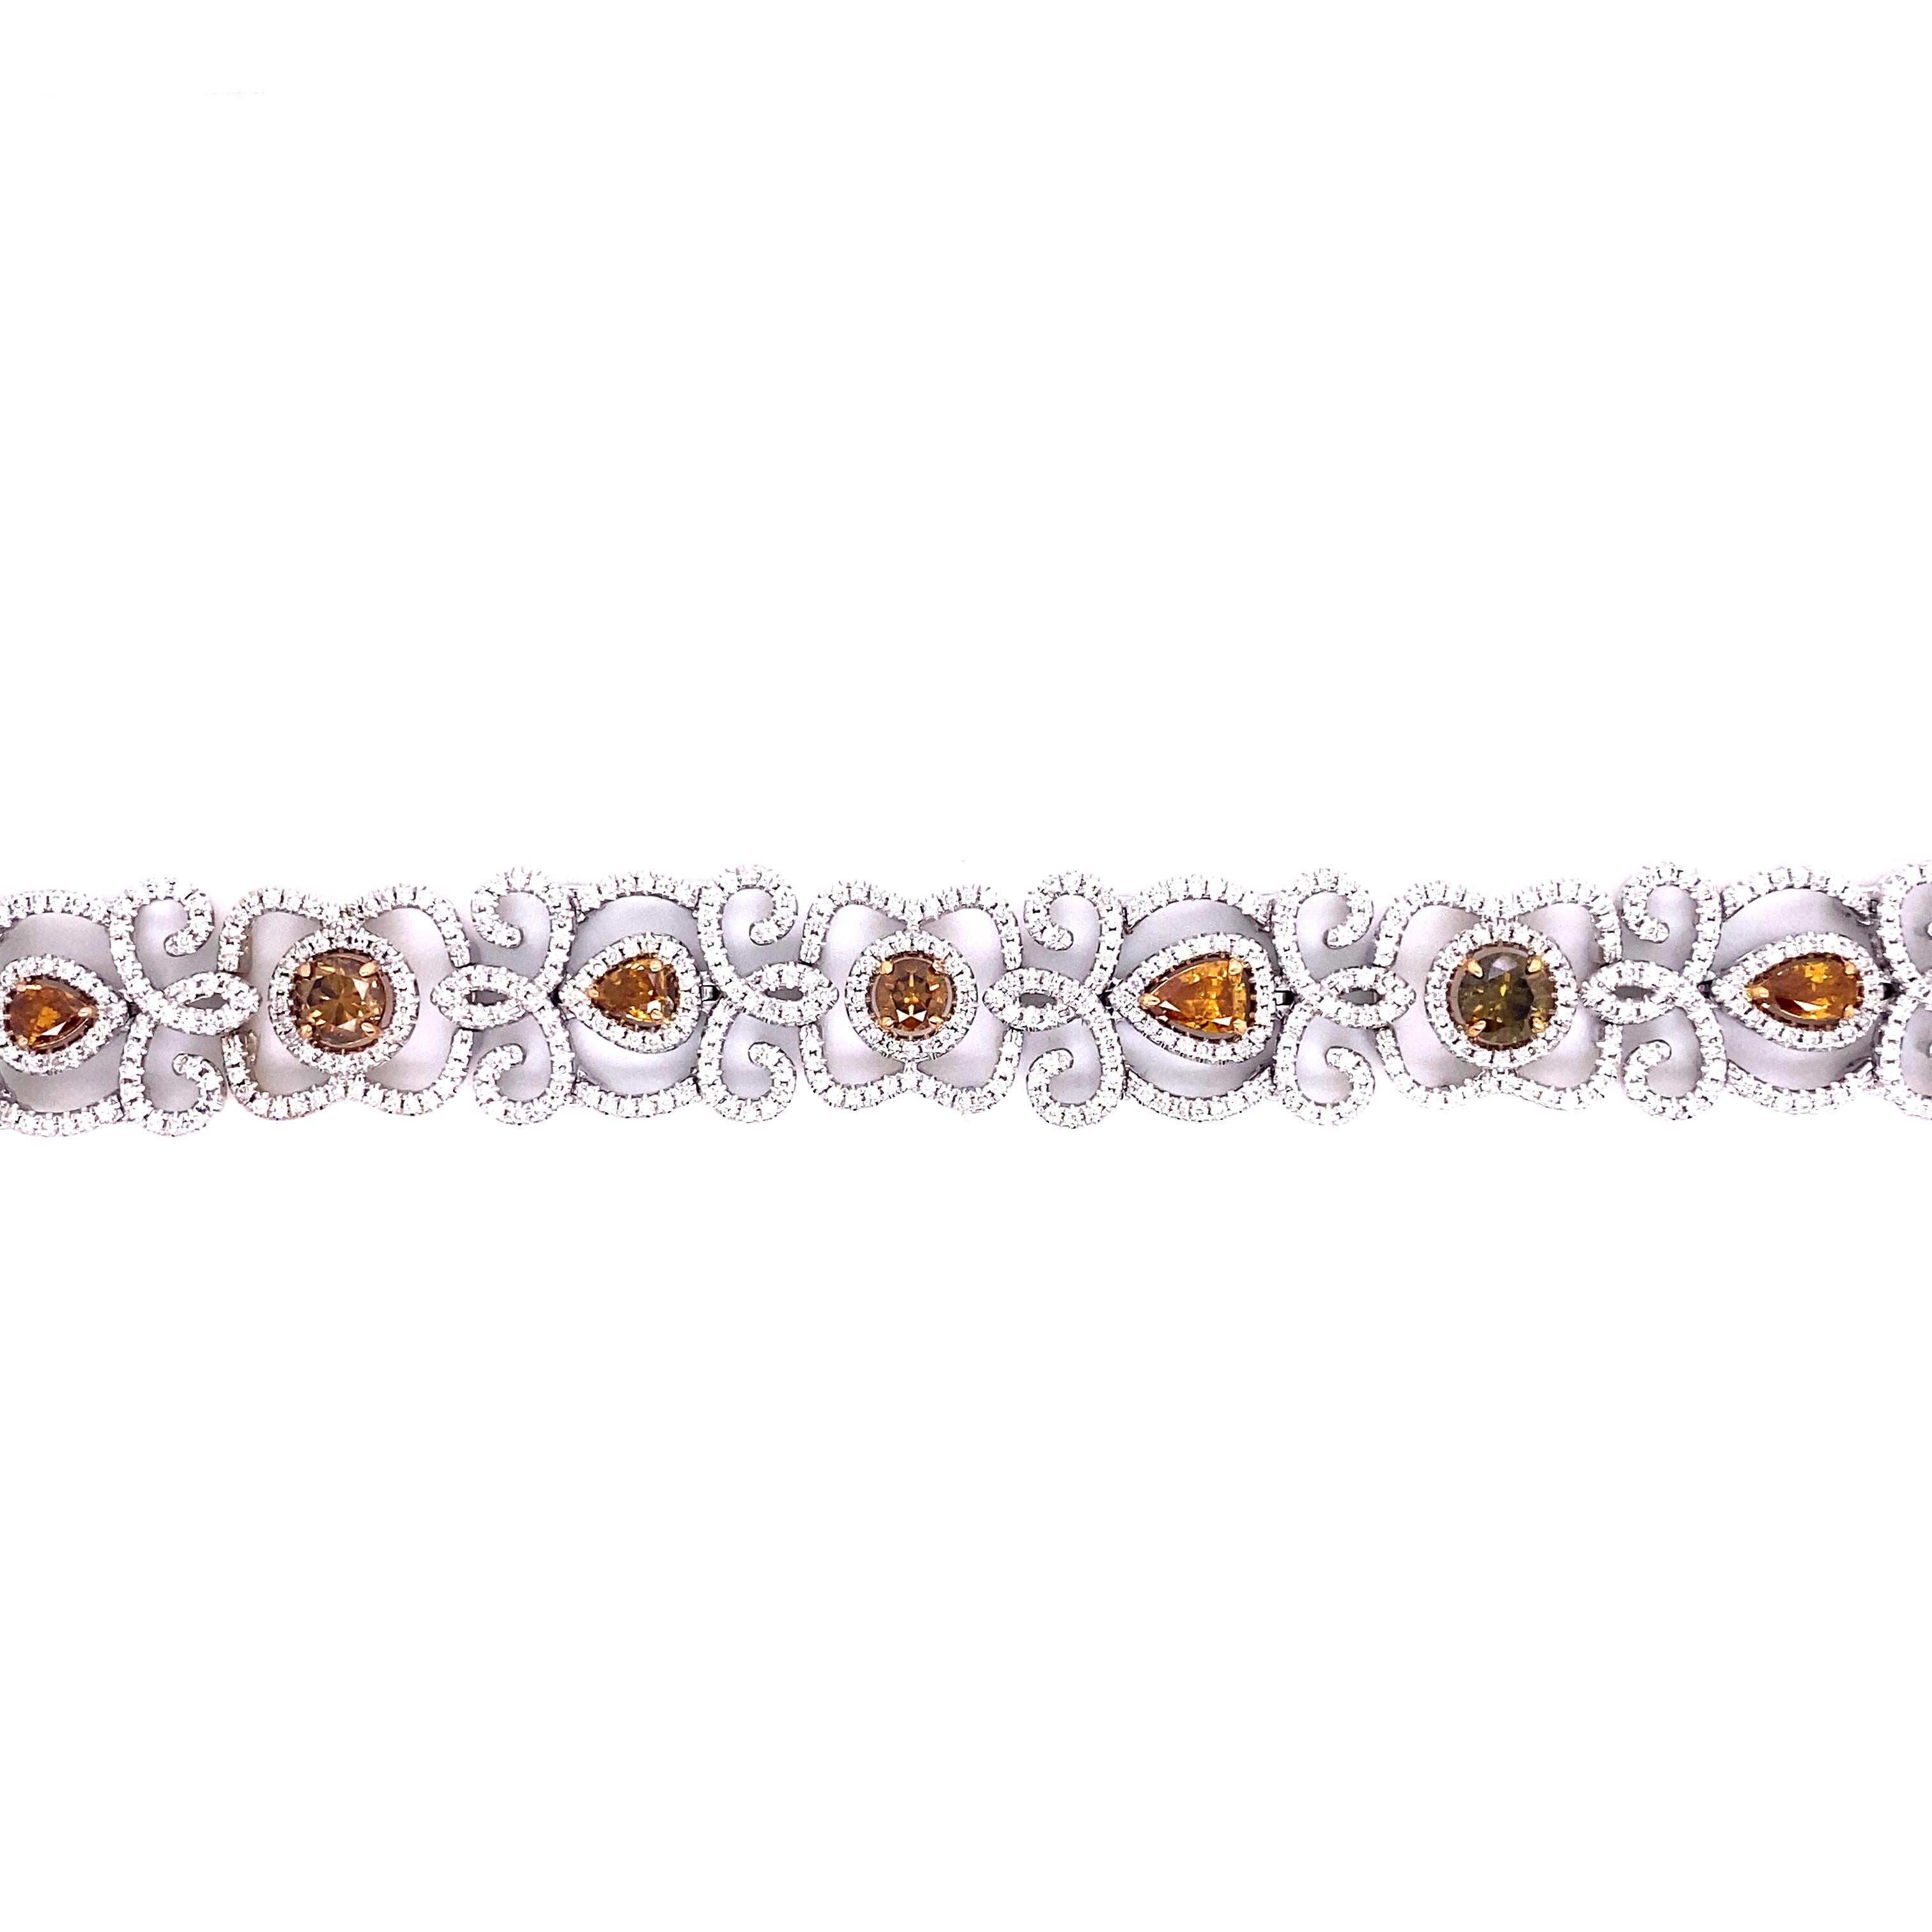 Armband mit farbigen Diamanten und weißen Diamanten 

Dieses einzigartige Armband besteht aus 4,11 Karat farbigen Diamanten, die von Champagner bis zu tiefen Orangetönen reichen und mit Zacken in 18 Karat Gelbgold gefasst sind. Jeder farbige Diamant